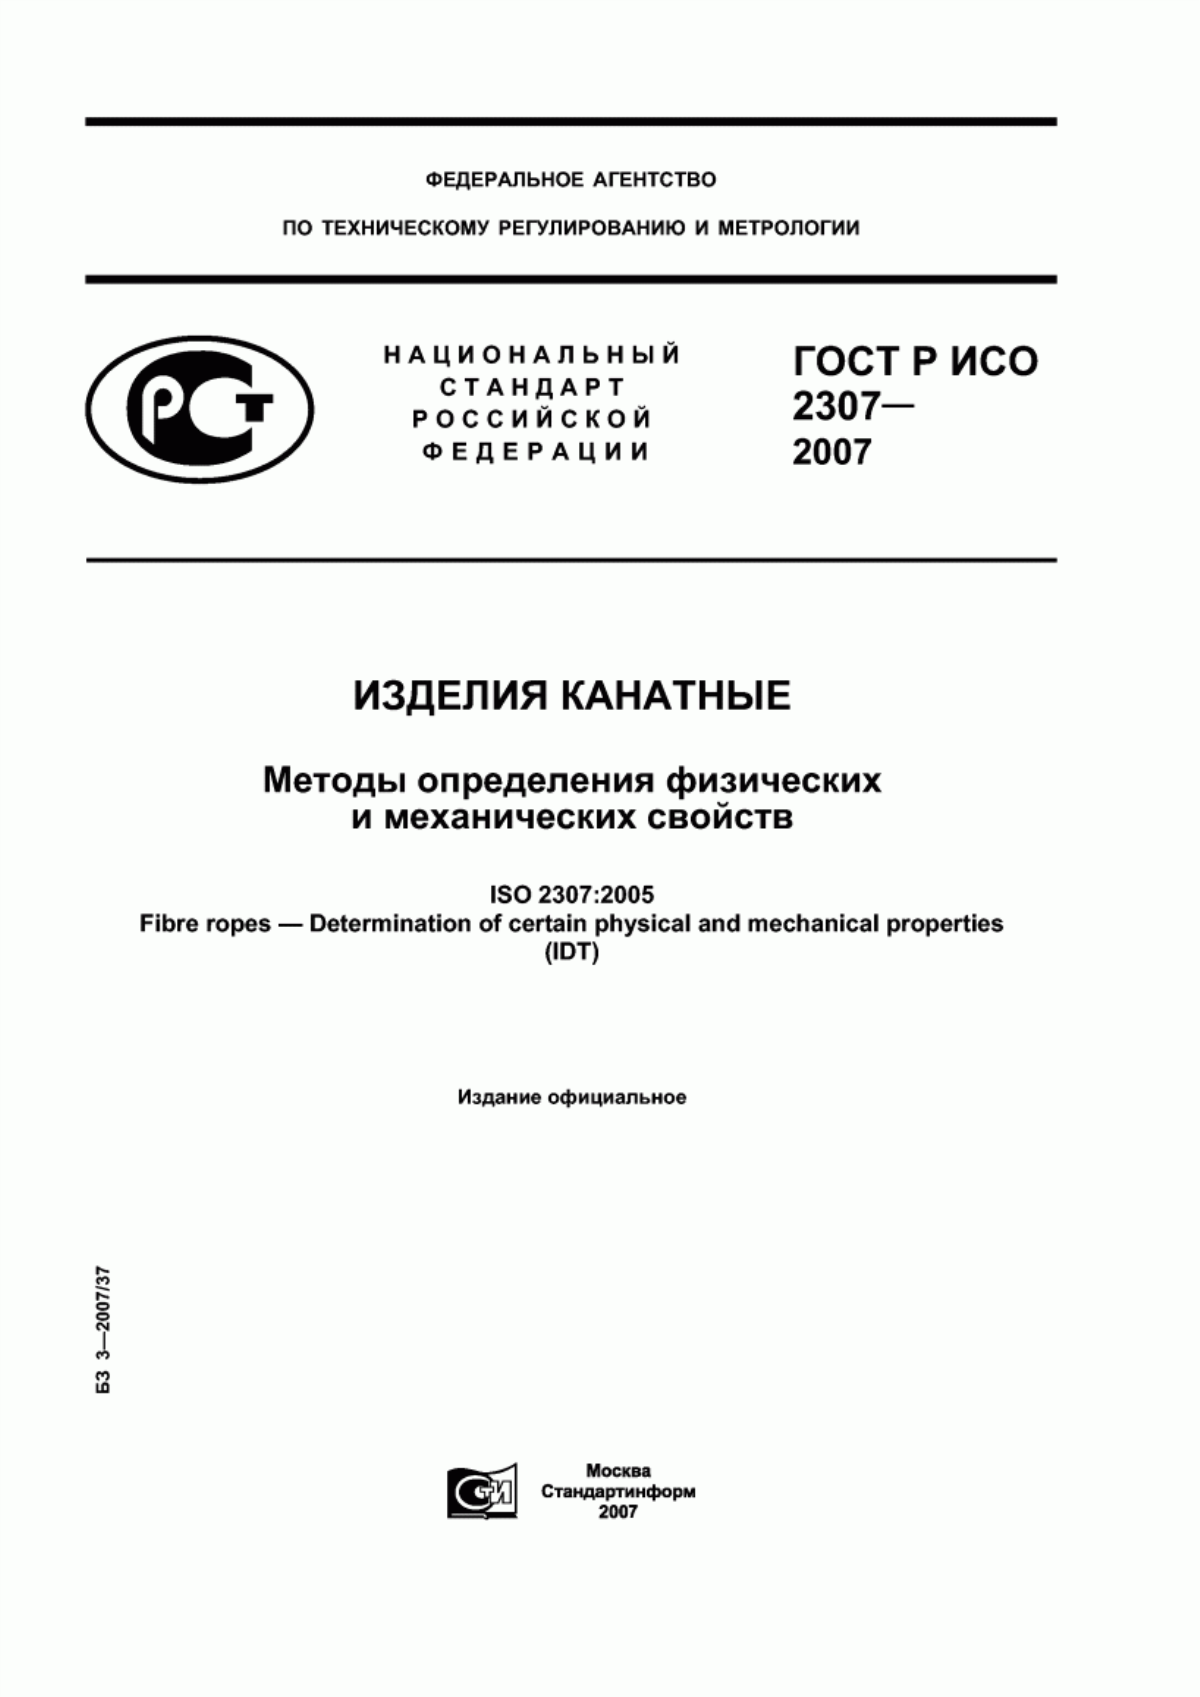 ГОСТ Р ИСО 2307-2007 Изделия канатные. Методы определения физических и механических свойств